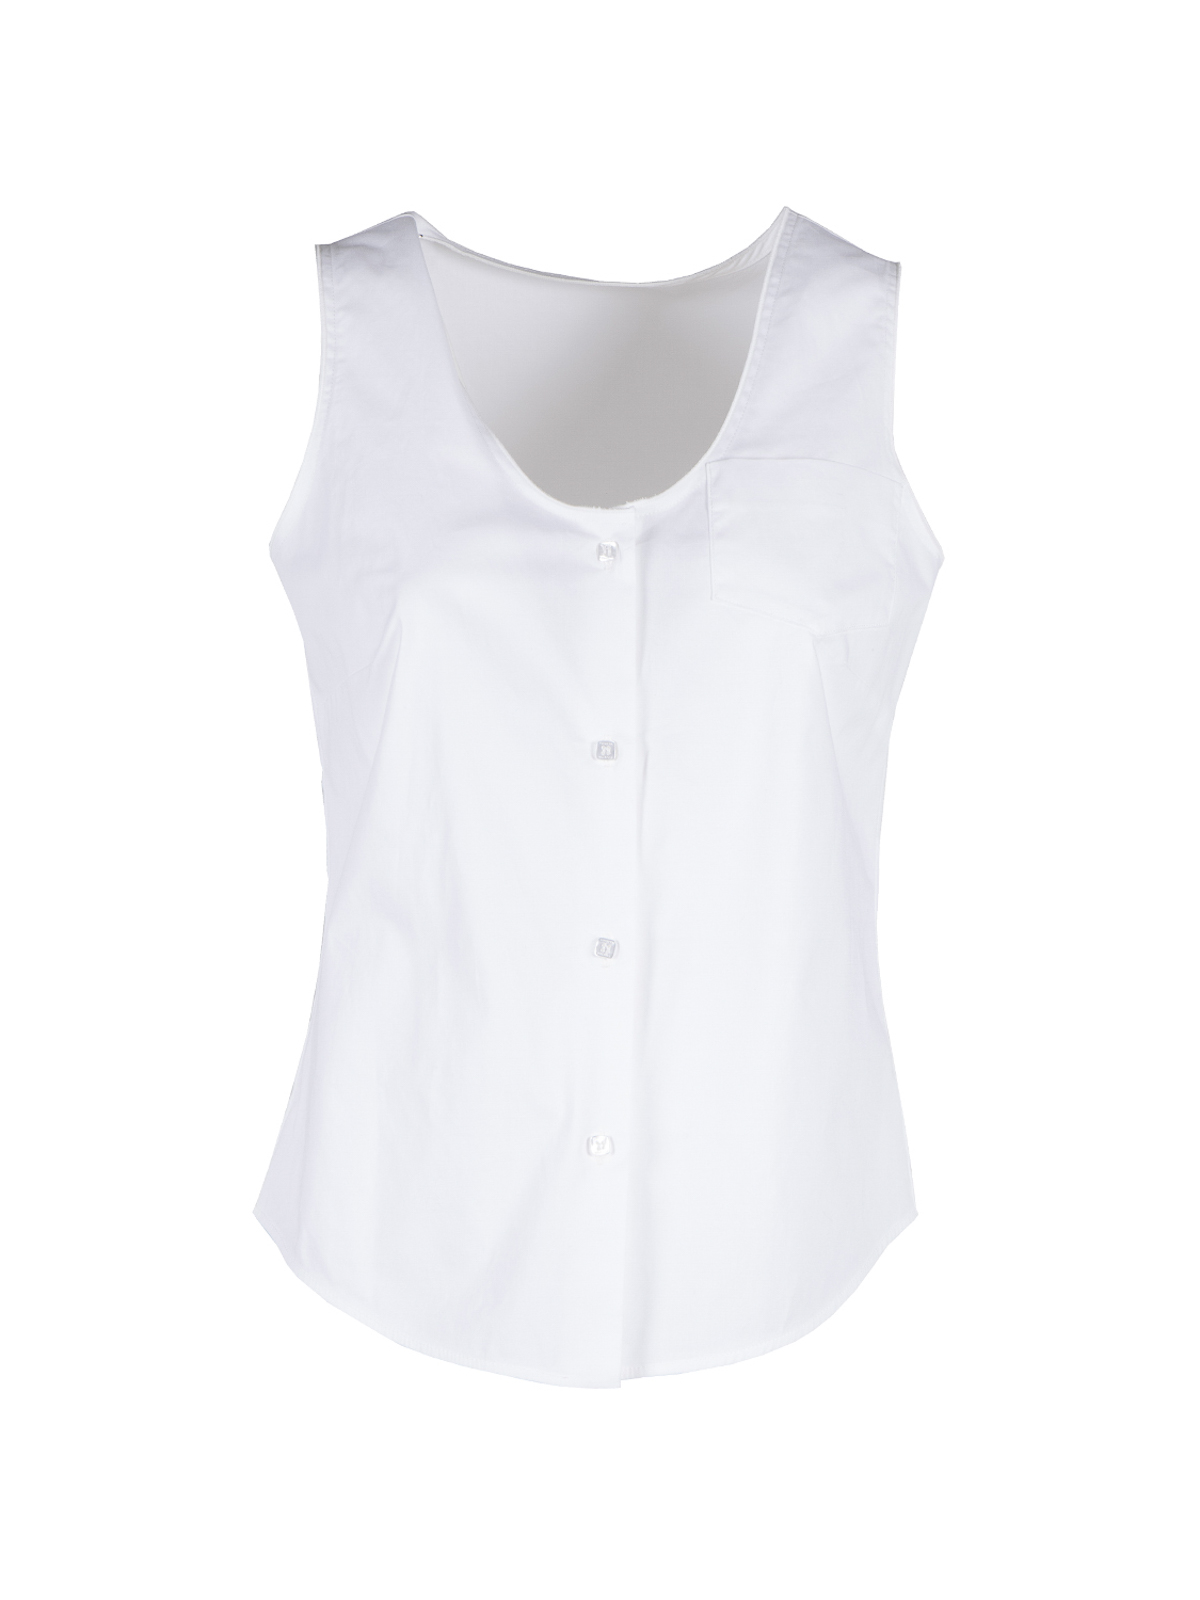 Shop Vivetta Camisa - Blanco In White